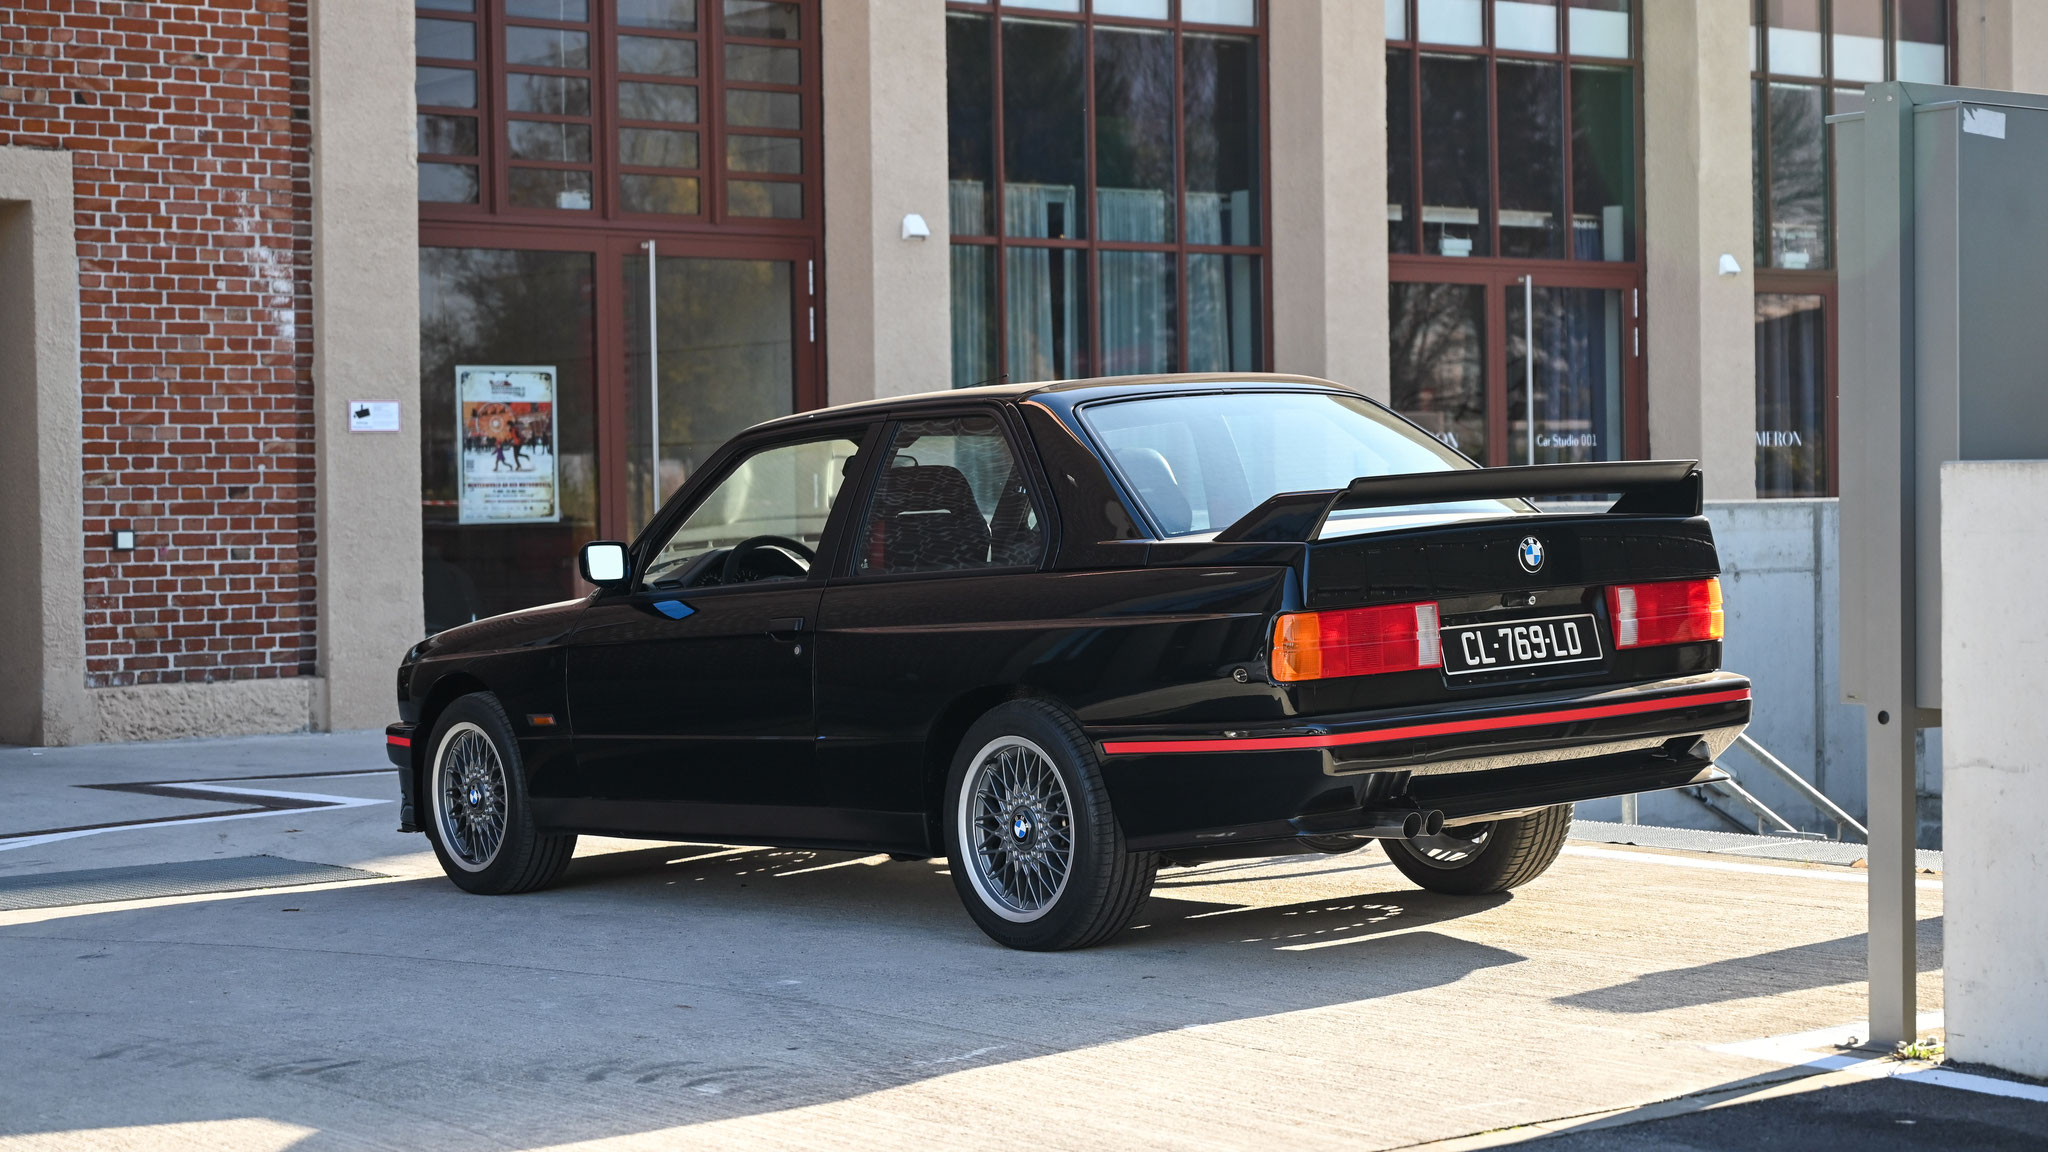 BMW M3 E30 - CL769LO (FRA)